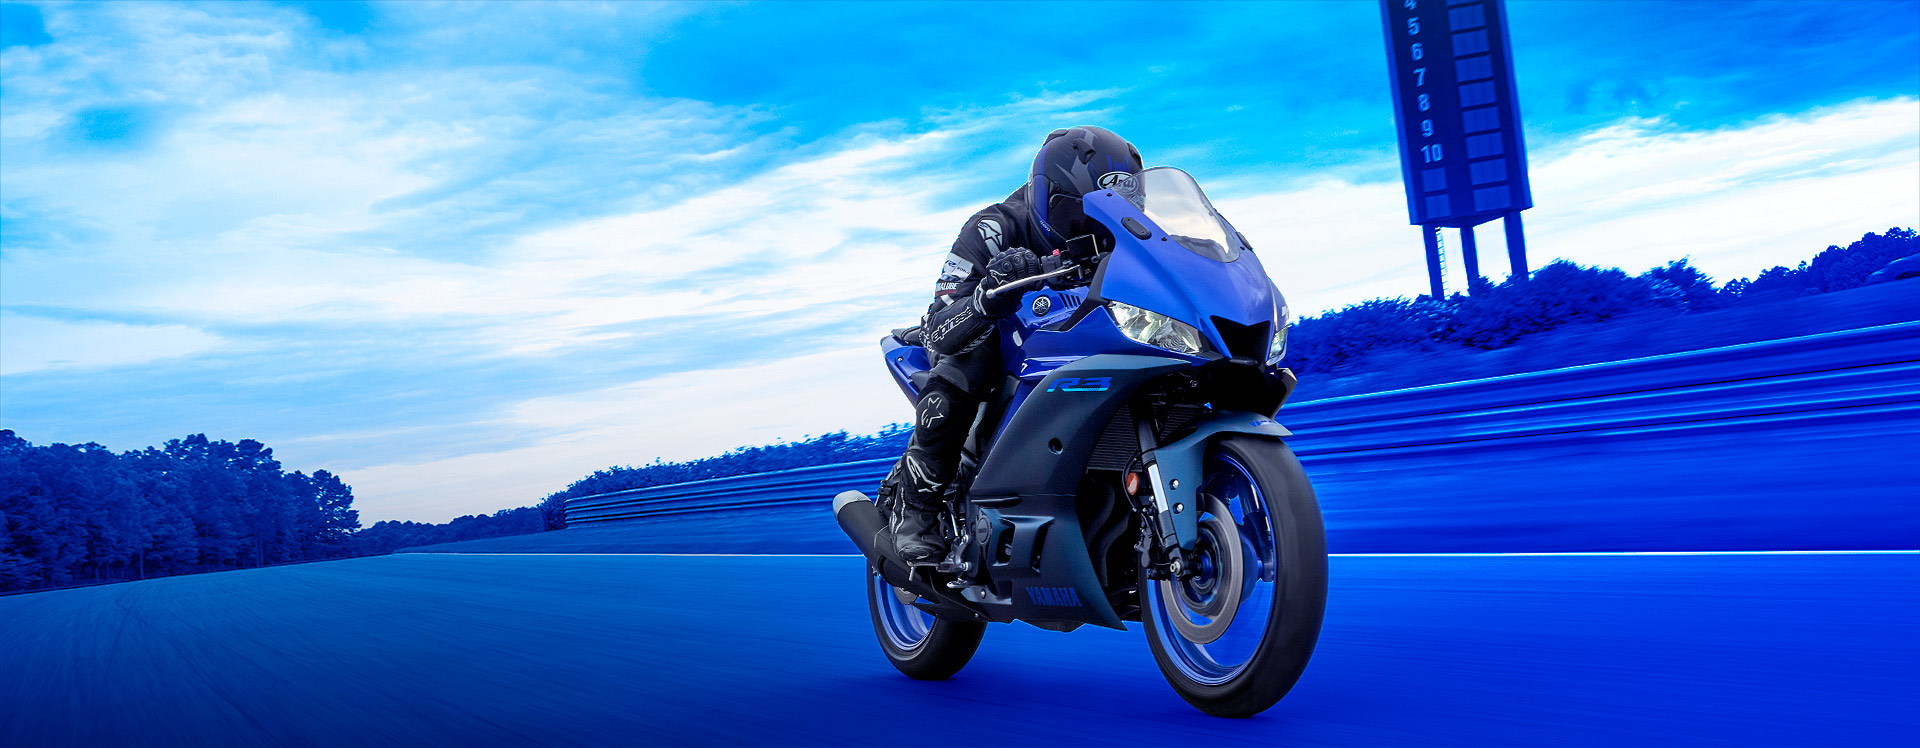 2014 Yamaha YZF-R125 unveiled – IAMABIKER – Everything Motorcycle!